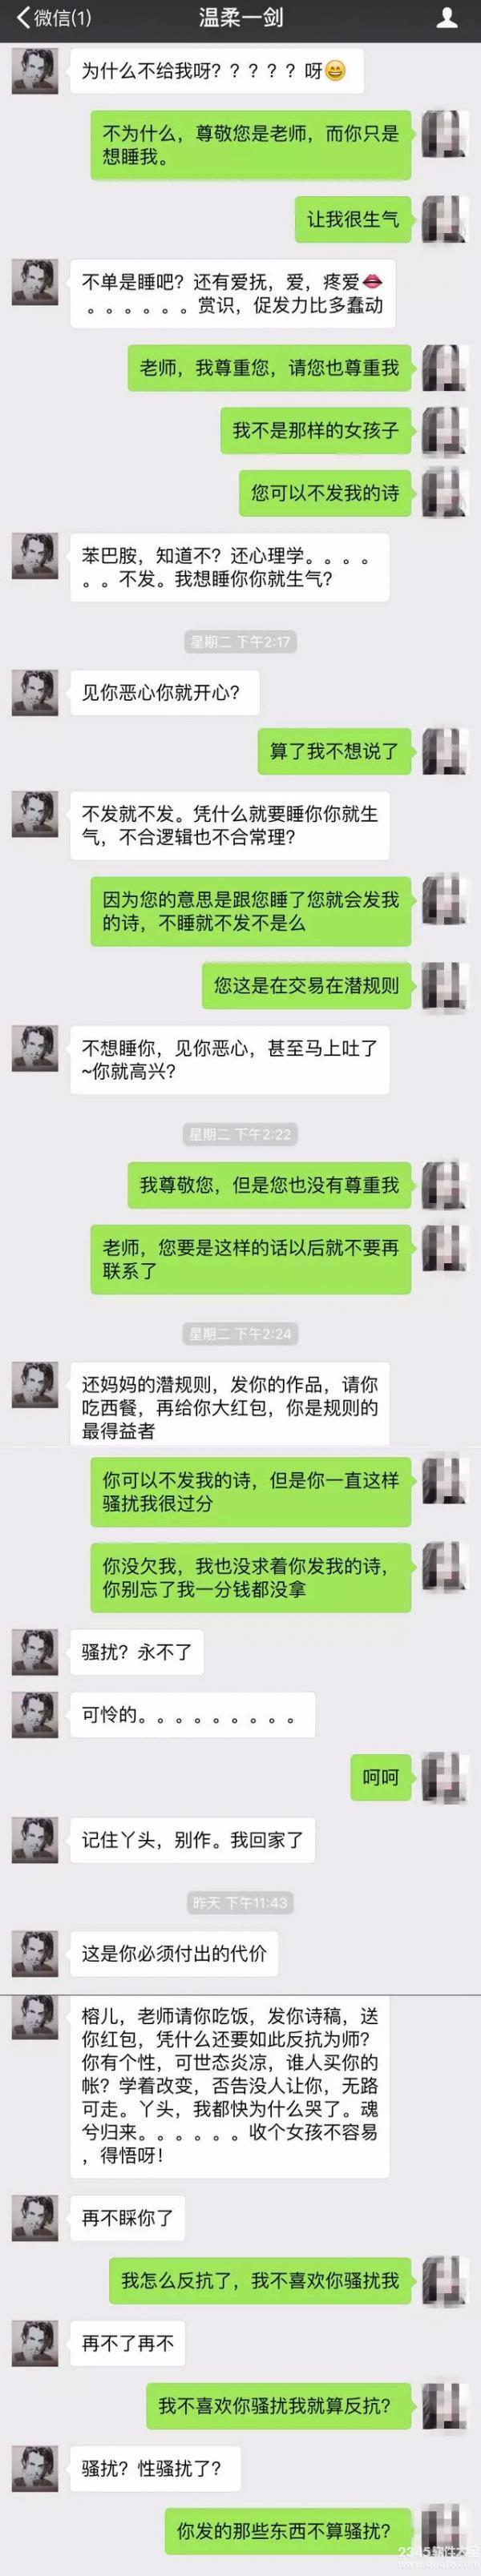 连云港某报知名男编辑多次性骚扰投稿女孩，竟还扬言称......附赵某目前情况